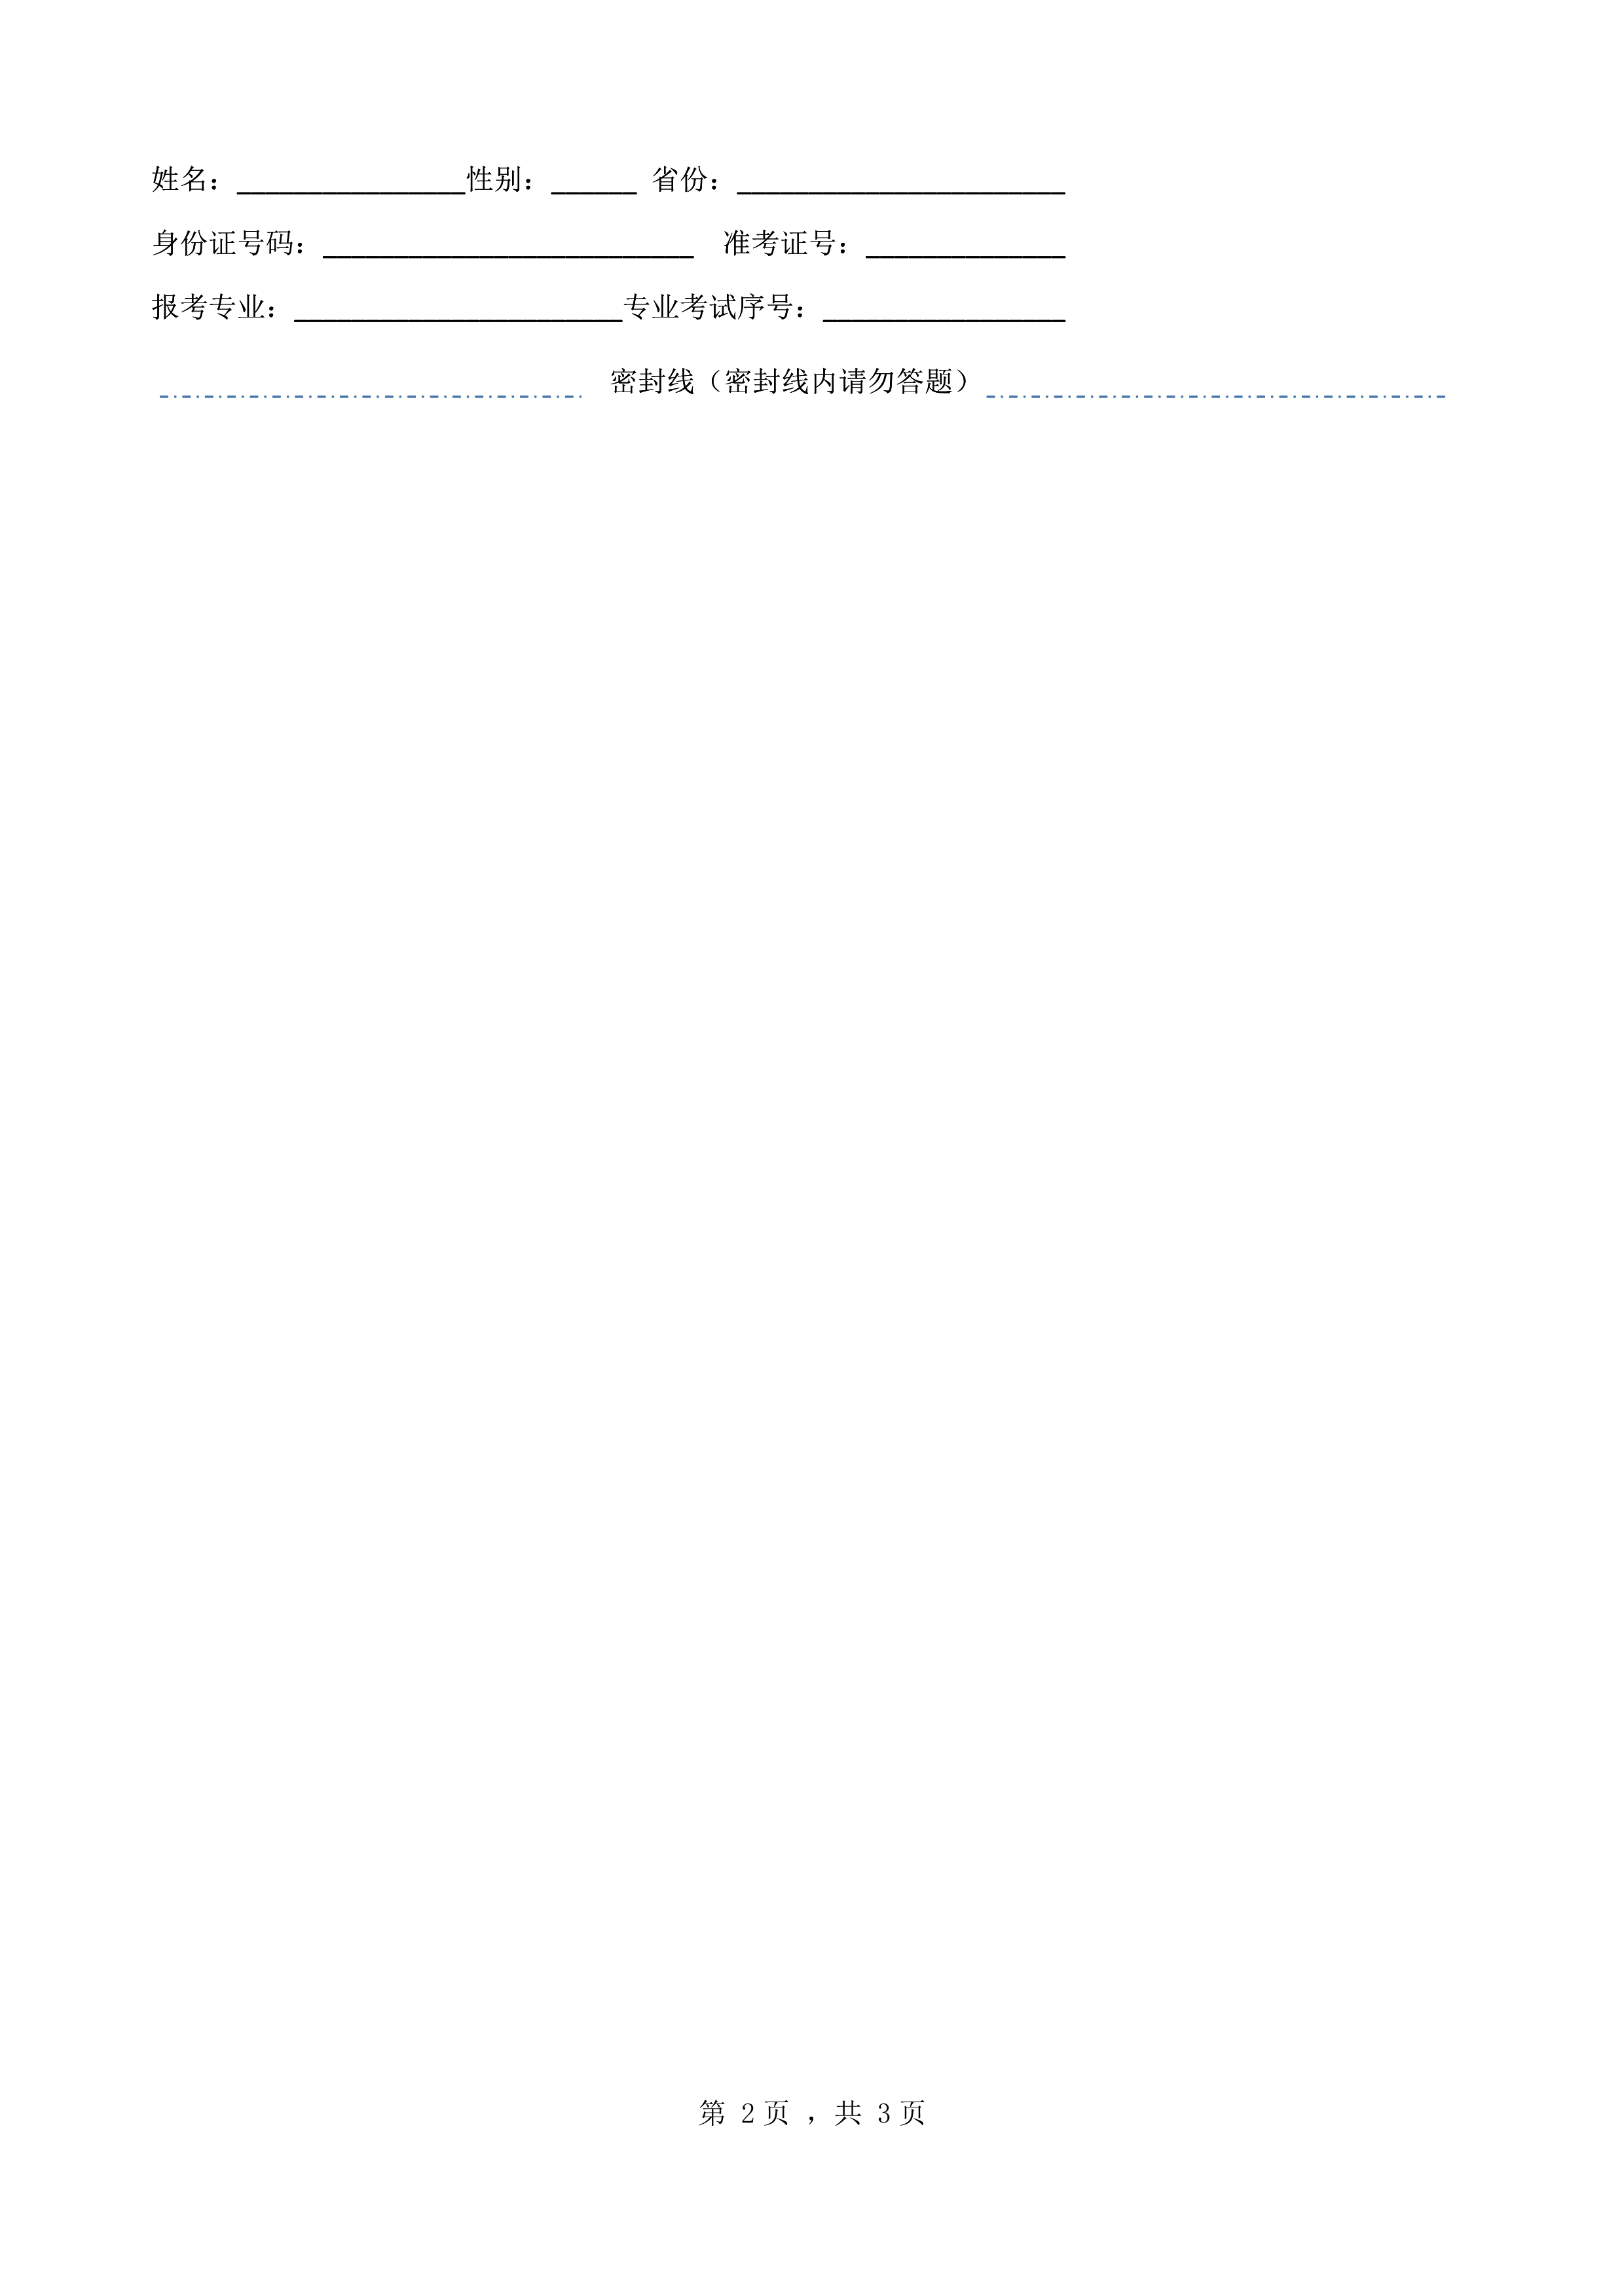 南京艺术学院2022年本科招生音乐学（音乐传播）专业《文论写作》科目考试答题纸 - 副本_2.jpg